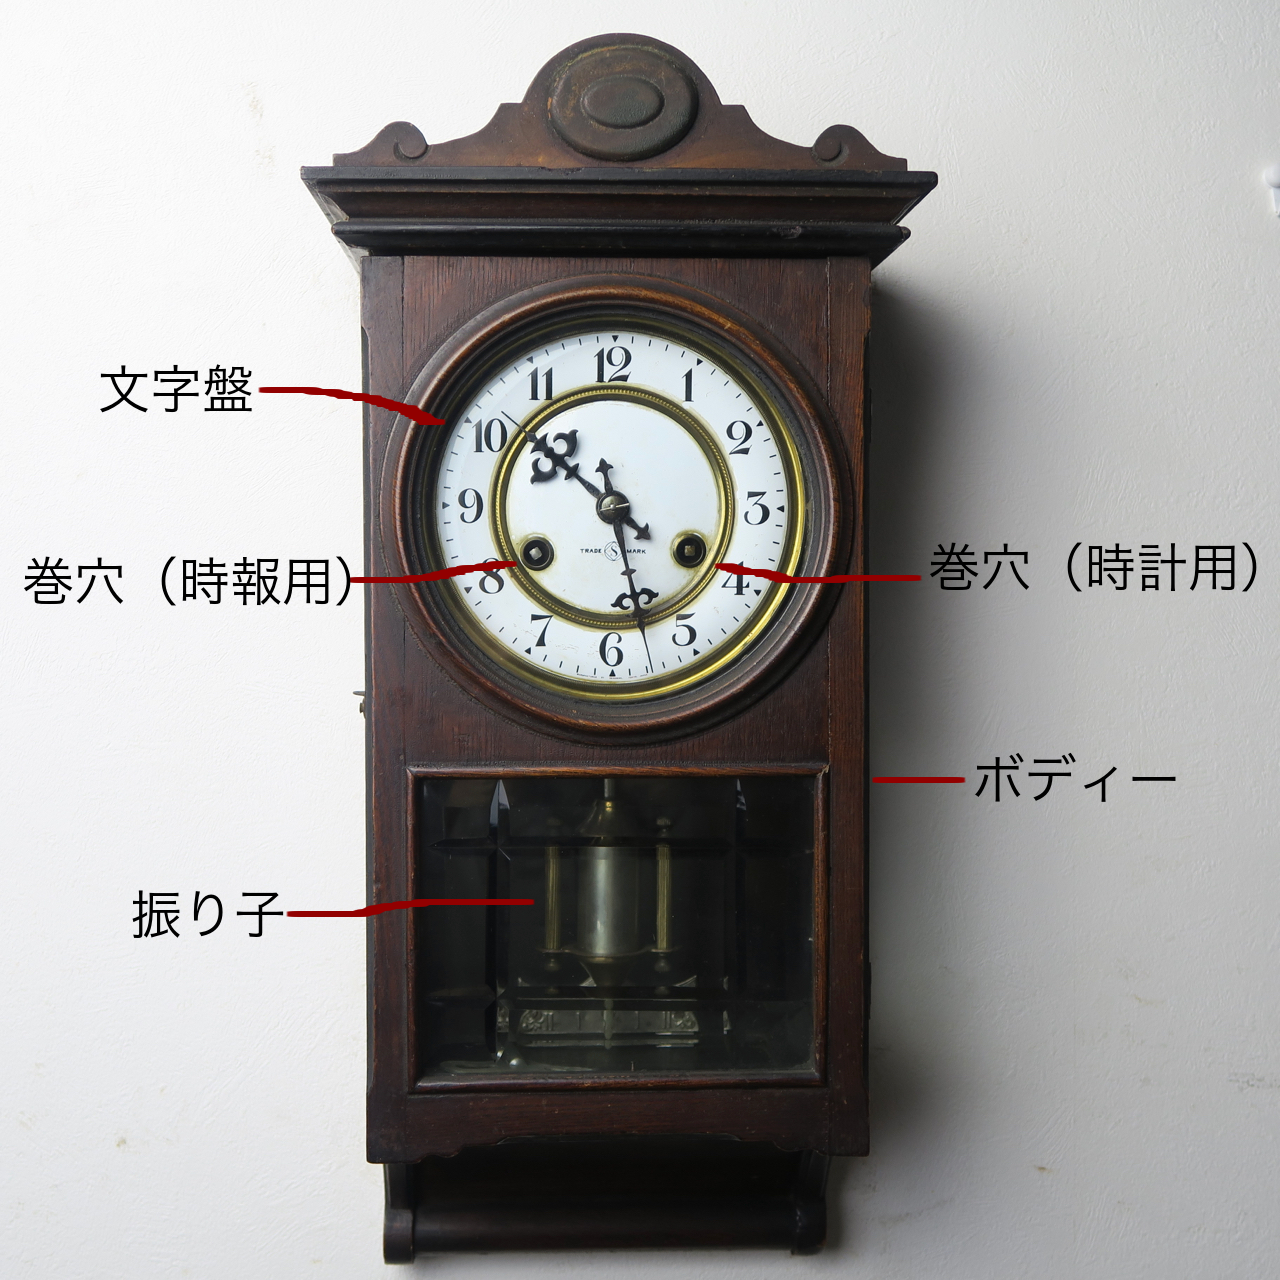 古時計取説 | Monogokoro - モノゴコロ